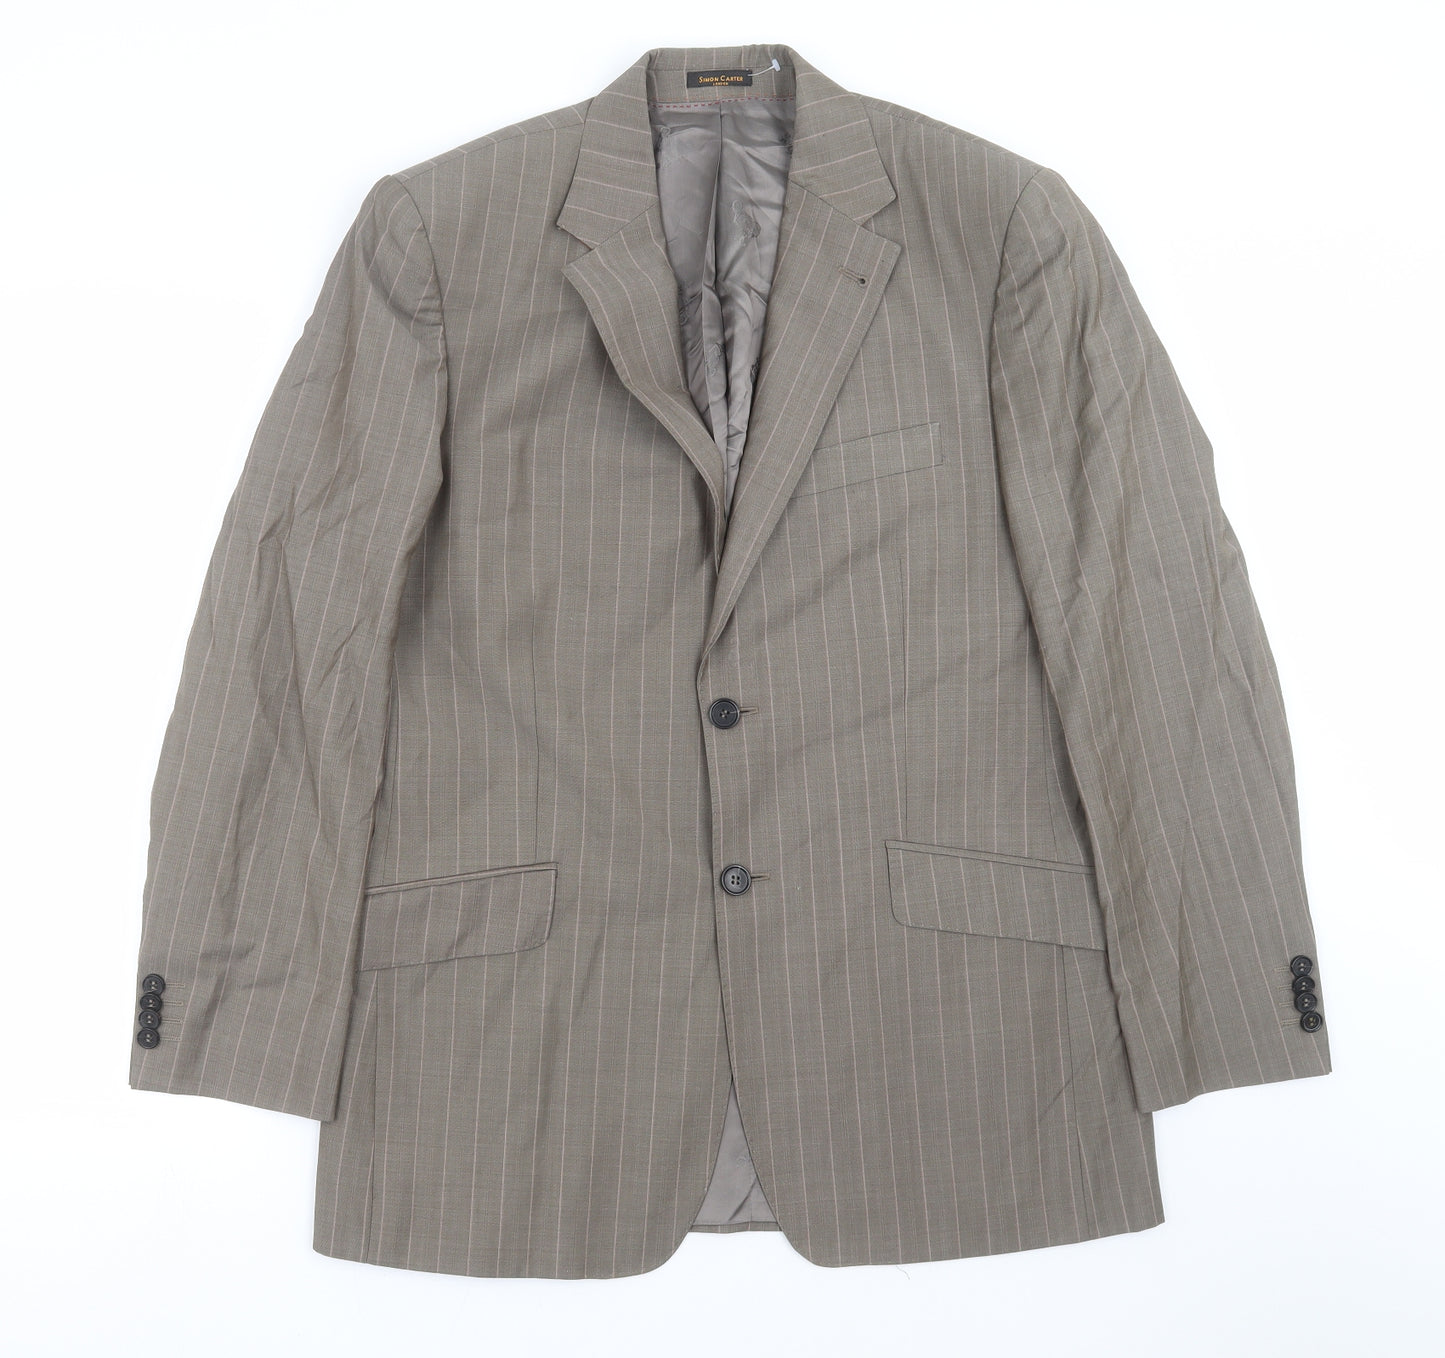 Simon Carter Mens Beige Striped  Jacket Suit Jacket Size 38